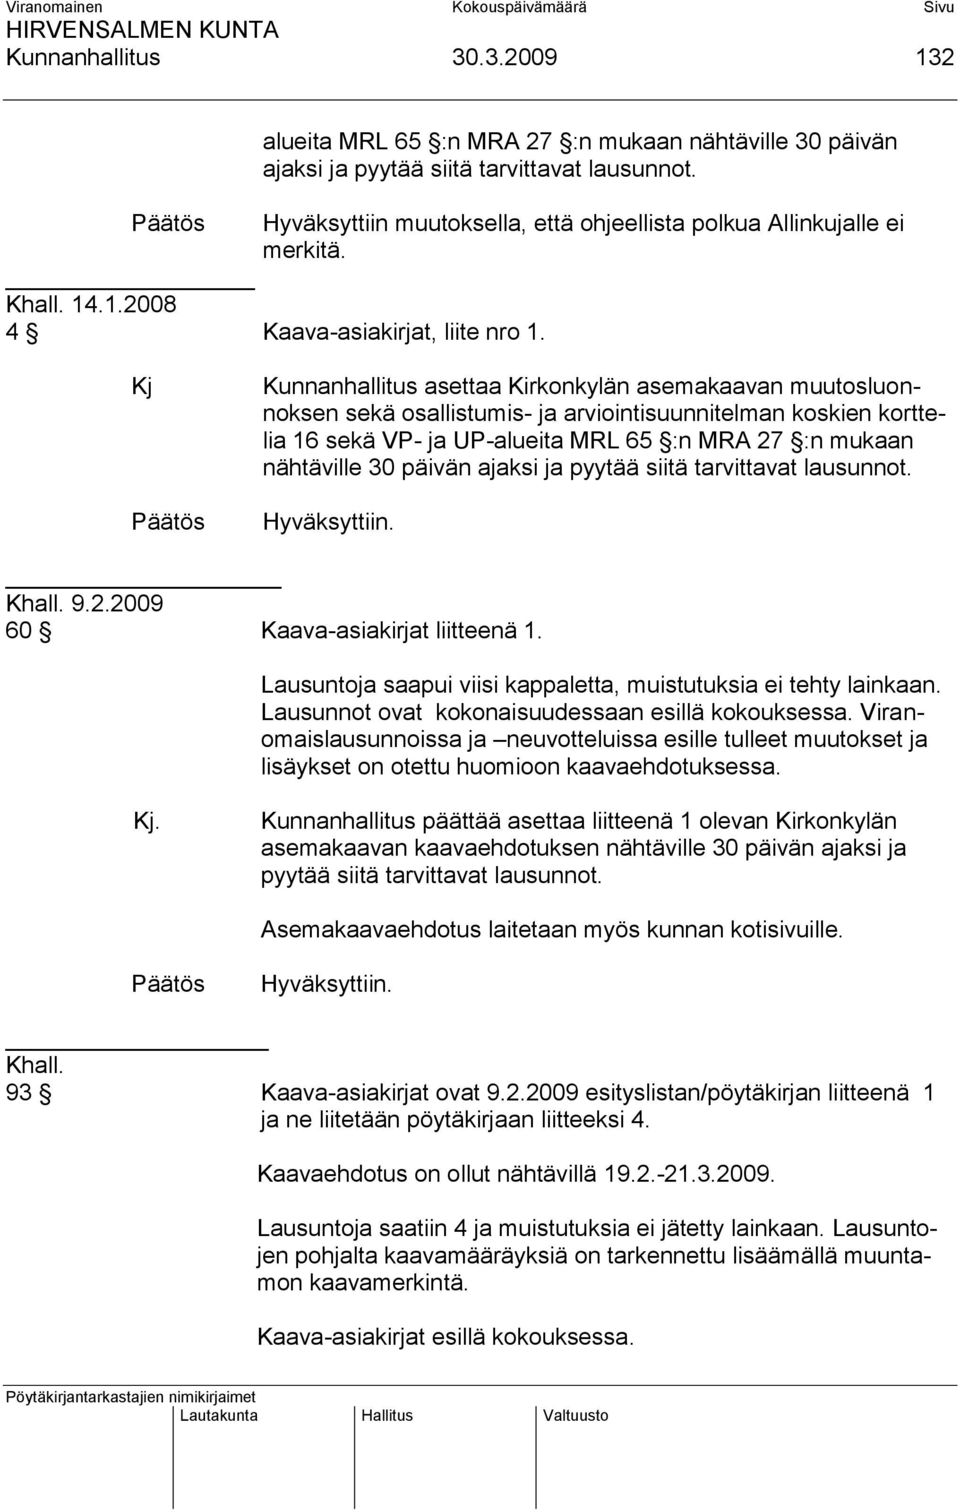 Kj Kunnanhallitus asettaa Kirkonkylän asemakaavan muutosluonnoksen sekä osallistumis- ja arviointisuunnitelman koskien korttelia 16 sekä VP- ja UP-alueita MRL 65 :n MRA 27 :n mukaan nähtäville 30